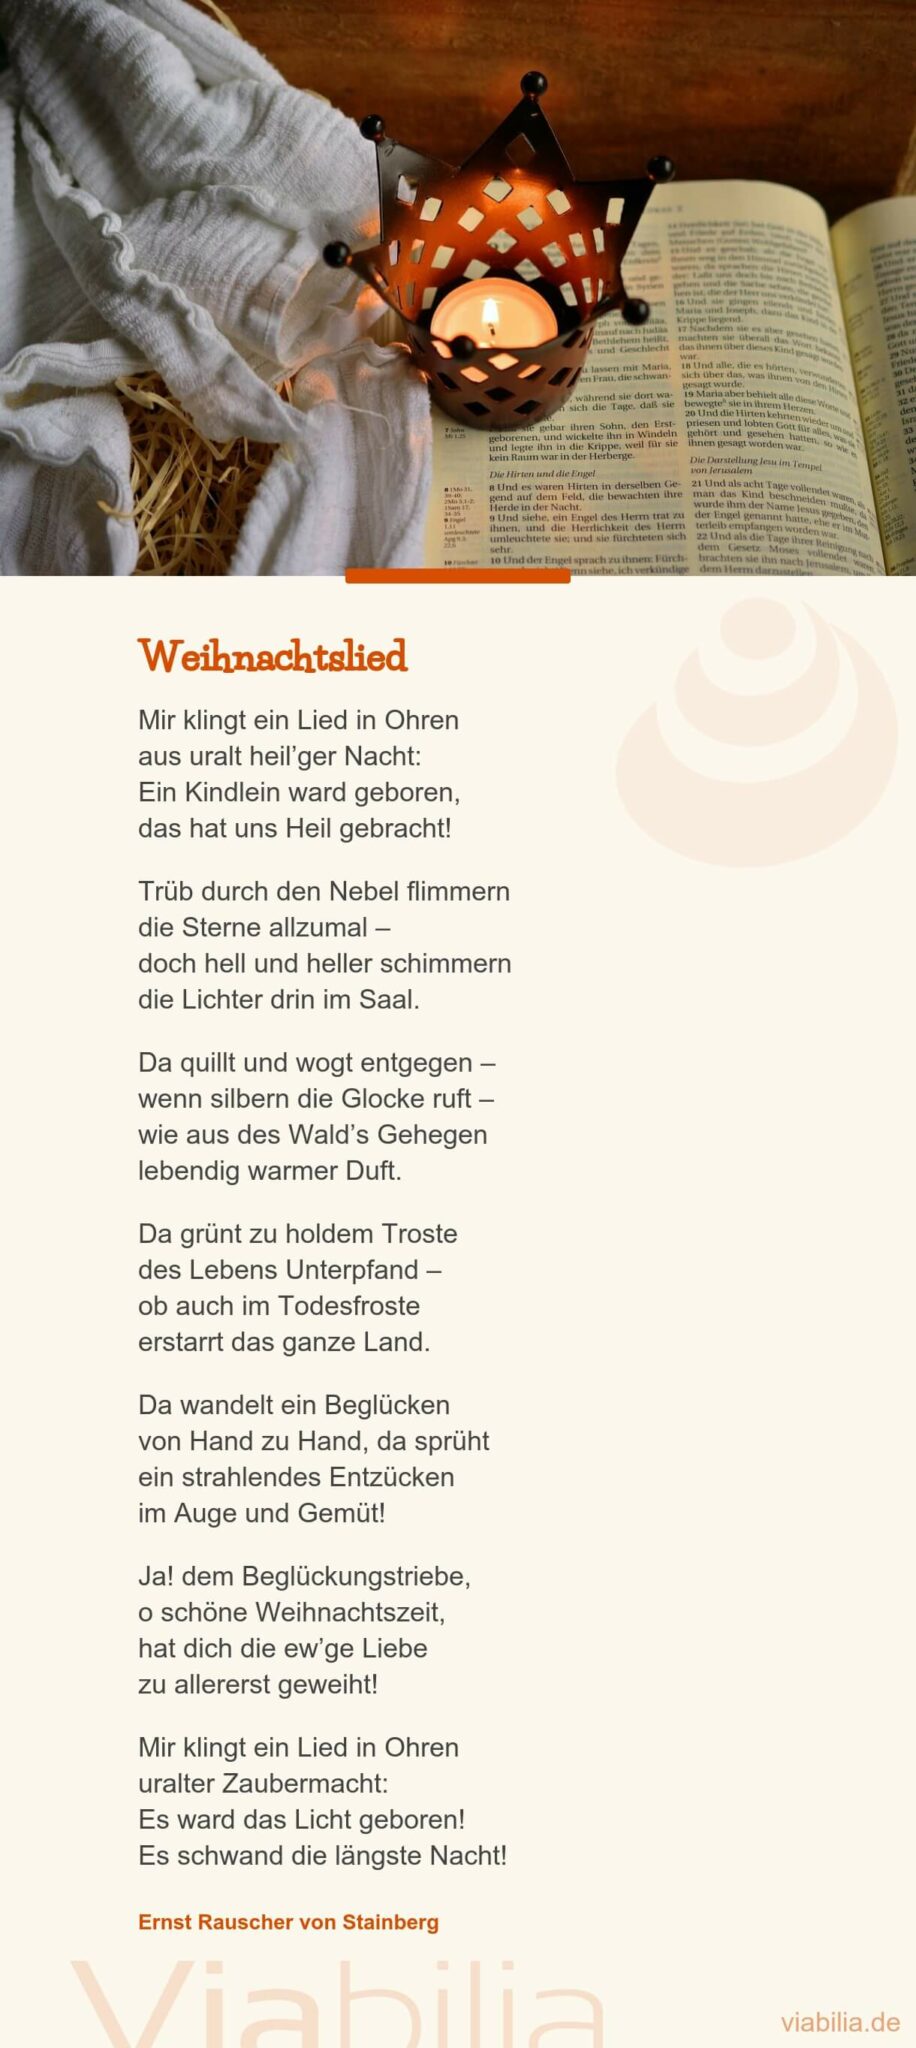 Traditionelleres Weihnachtsgedicht: Lied in Ohren